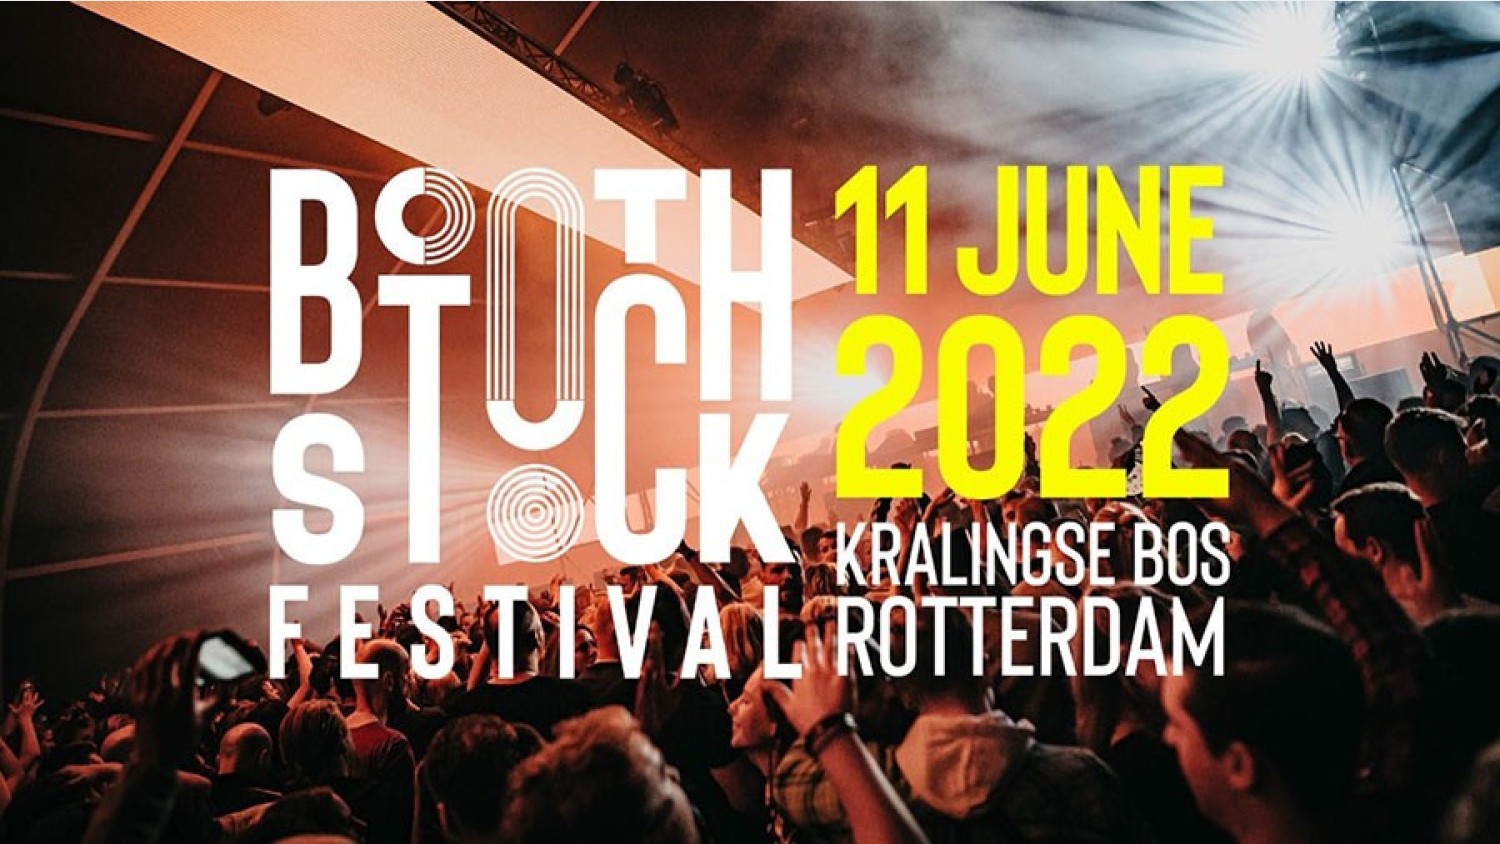 Party nieuws: Kaartverkoop Boothstock festival 2022 gestart